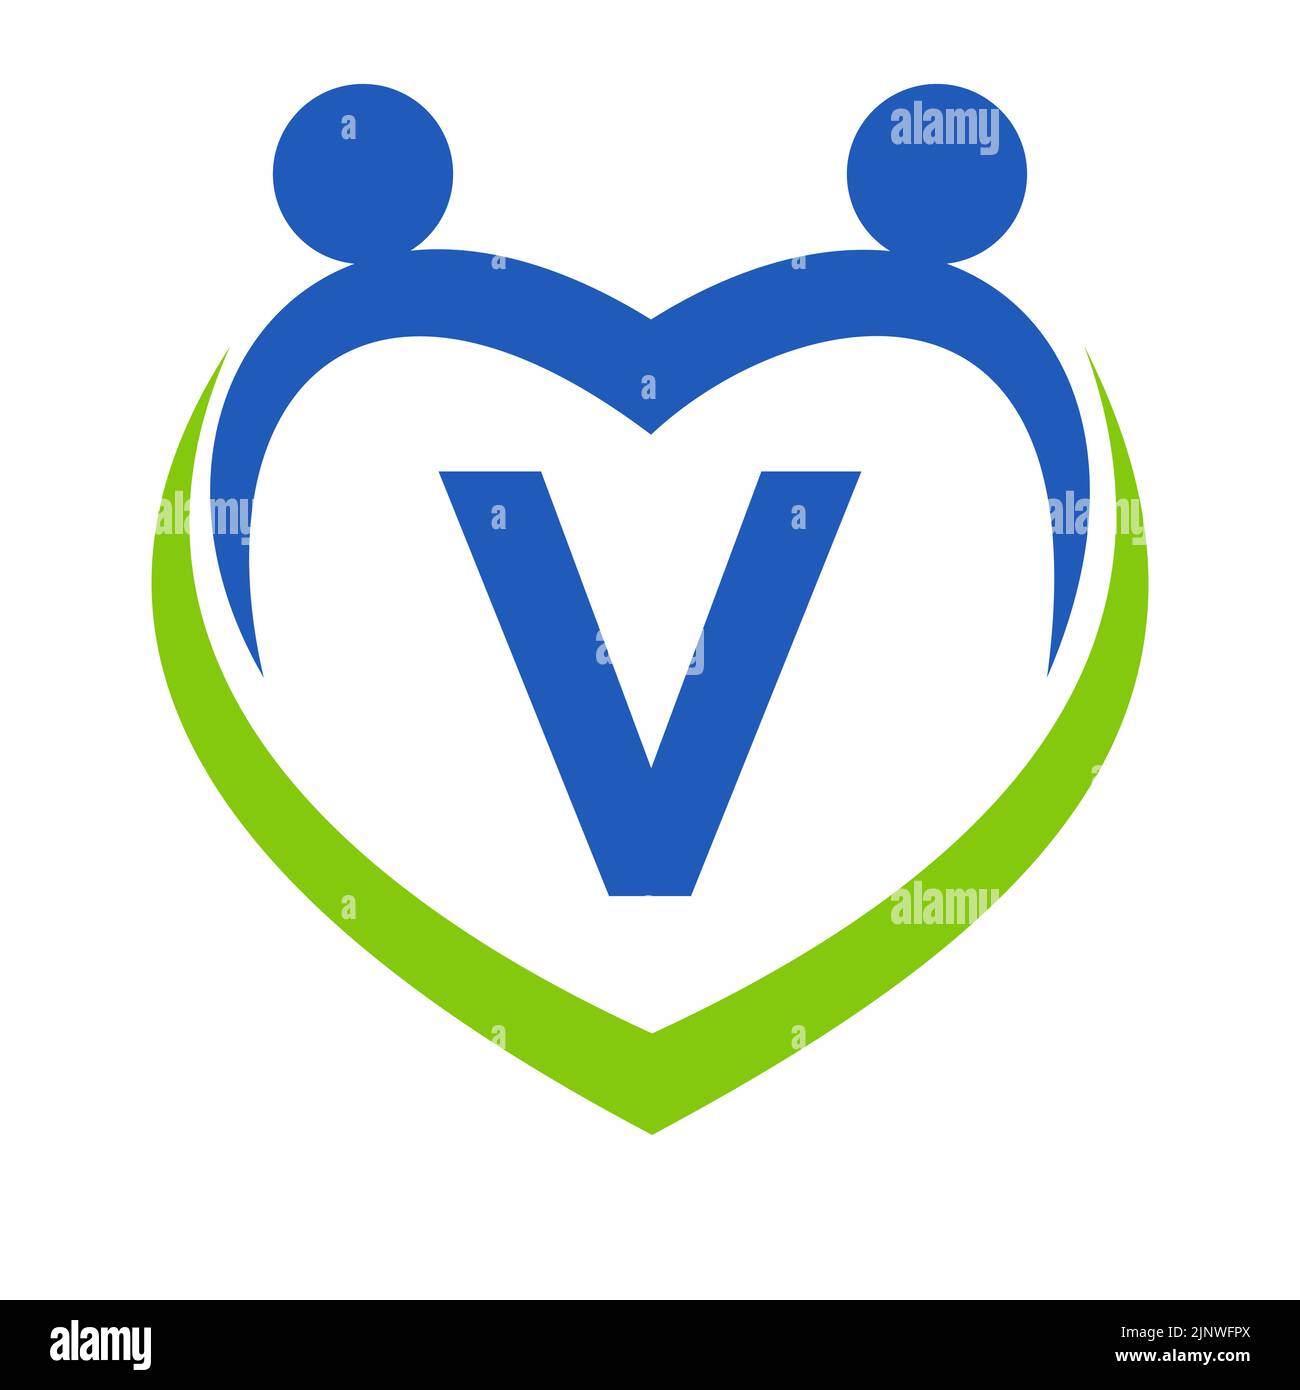 Vorlage für das Health Care Sign-on Letter V. Unity und Teamwork Logo Design. Logo der Stiftung für wohltätige Zwecke und Spenden Stock Vektor